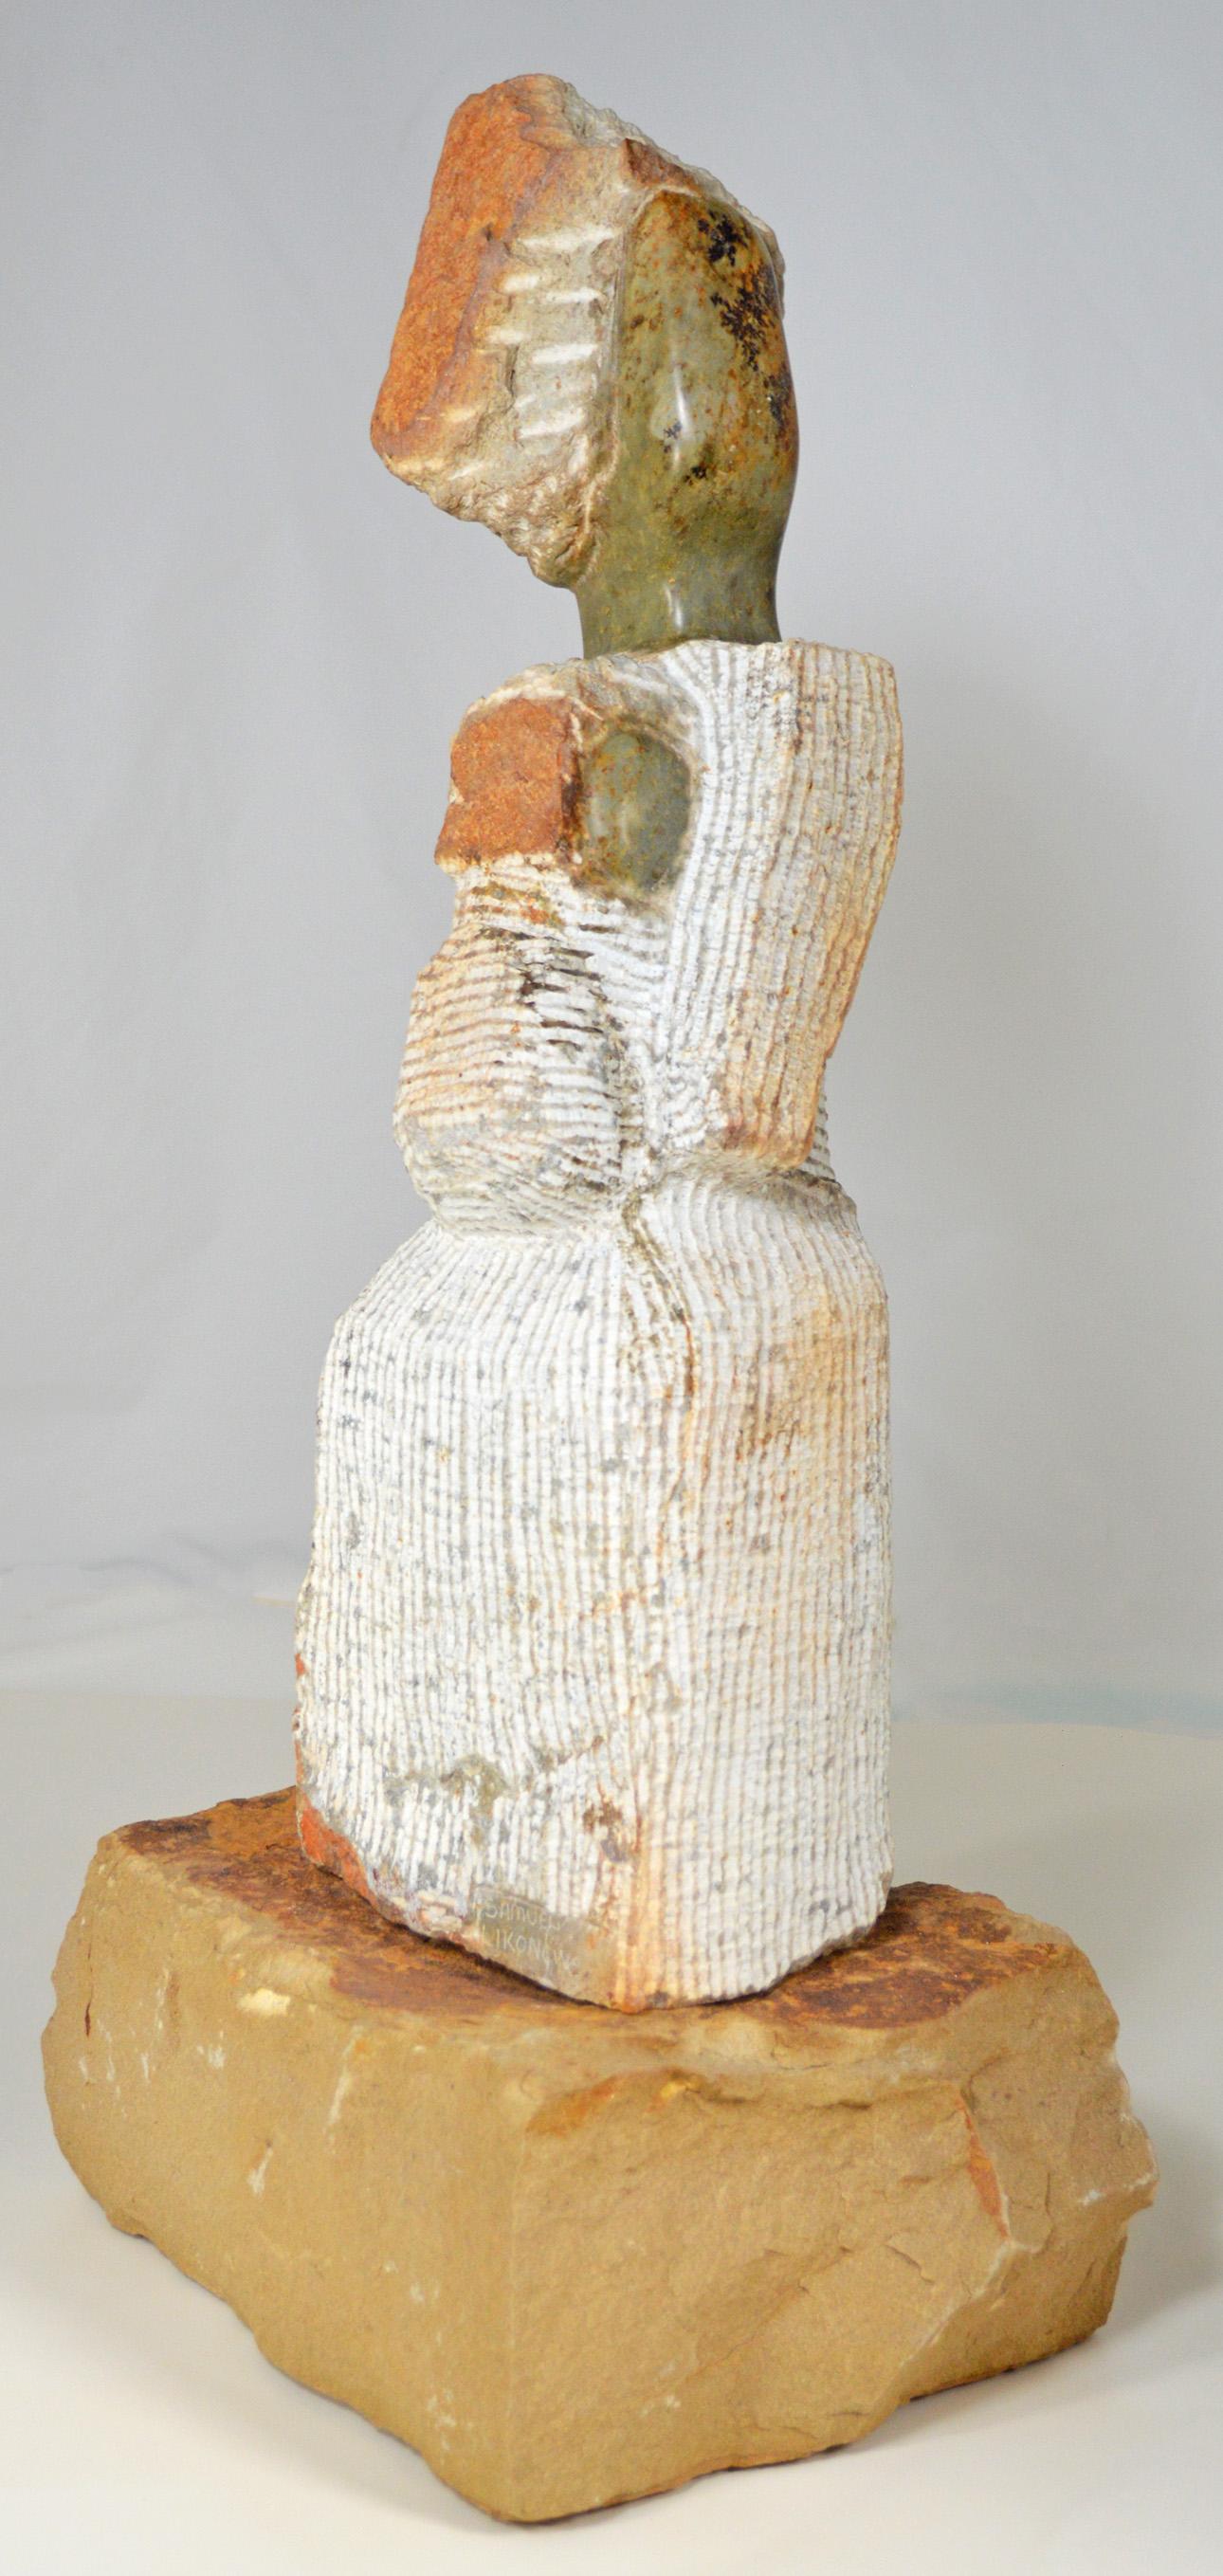 mère et enfant" est une sculpture originale en opale serpentine signée par l'artiste zimbabwéen Samuel Likongwe. Basé à Harare, Likongwe a été formé dans la tradition de la sculpture sur pierre shona et cette sculpture est un exemple exquis de son